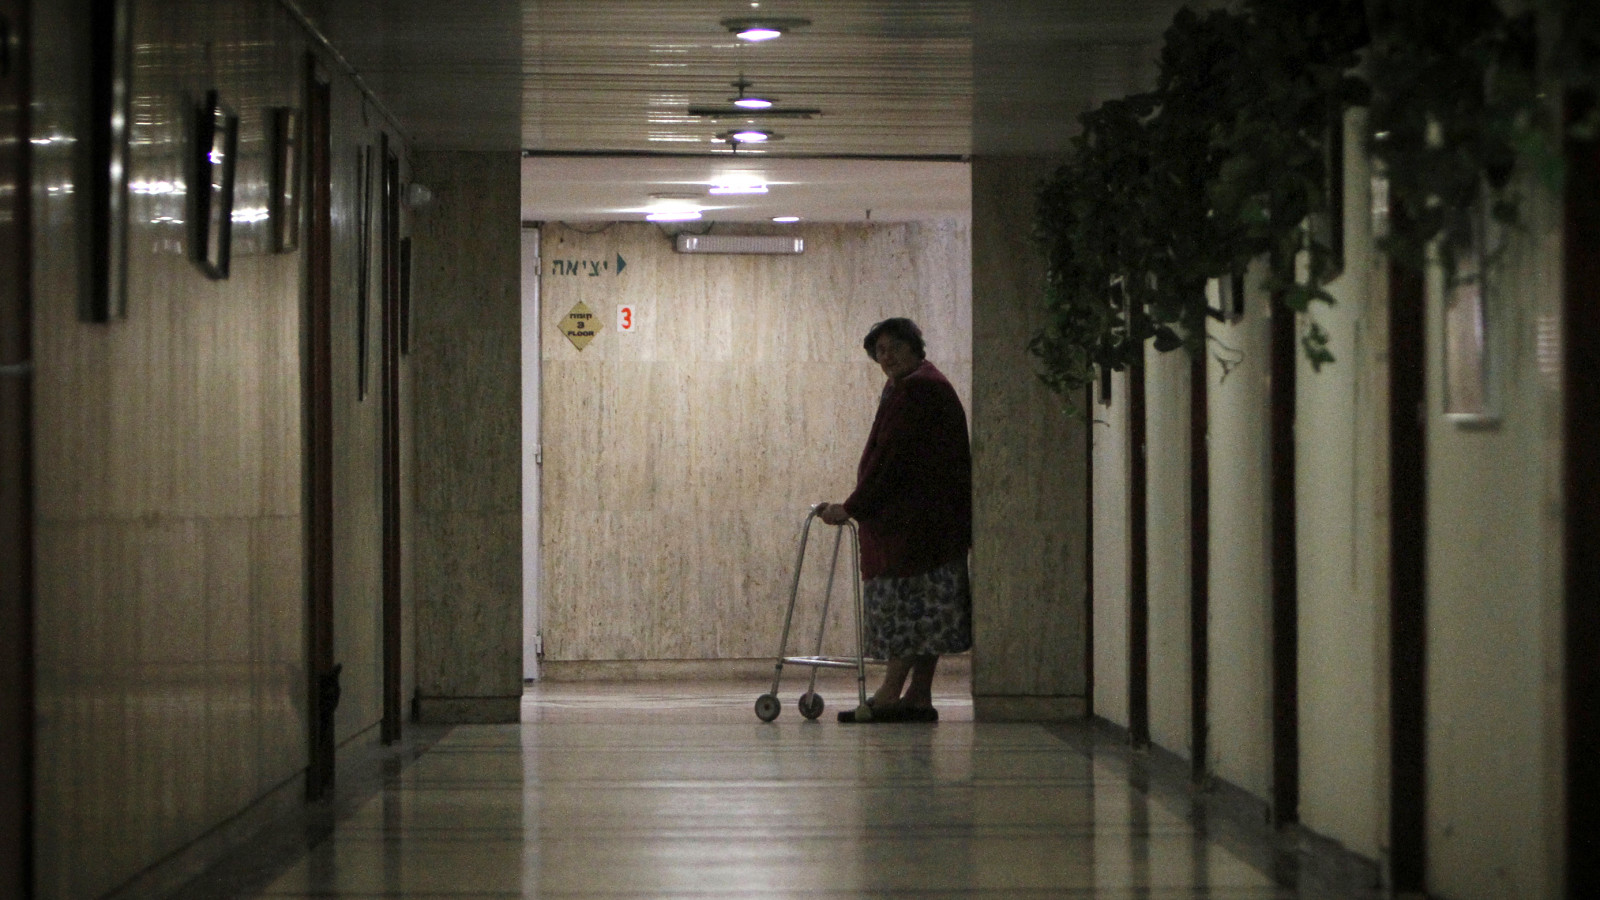 אדם בן 65 ומעלה מבקר במרפאות 22 פעמים בשנה בממוצע, למצולמת אין קשר לכתבה (צילום: מרים אלסטר / פלאש 90.)